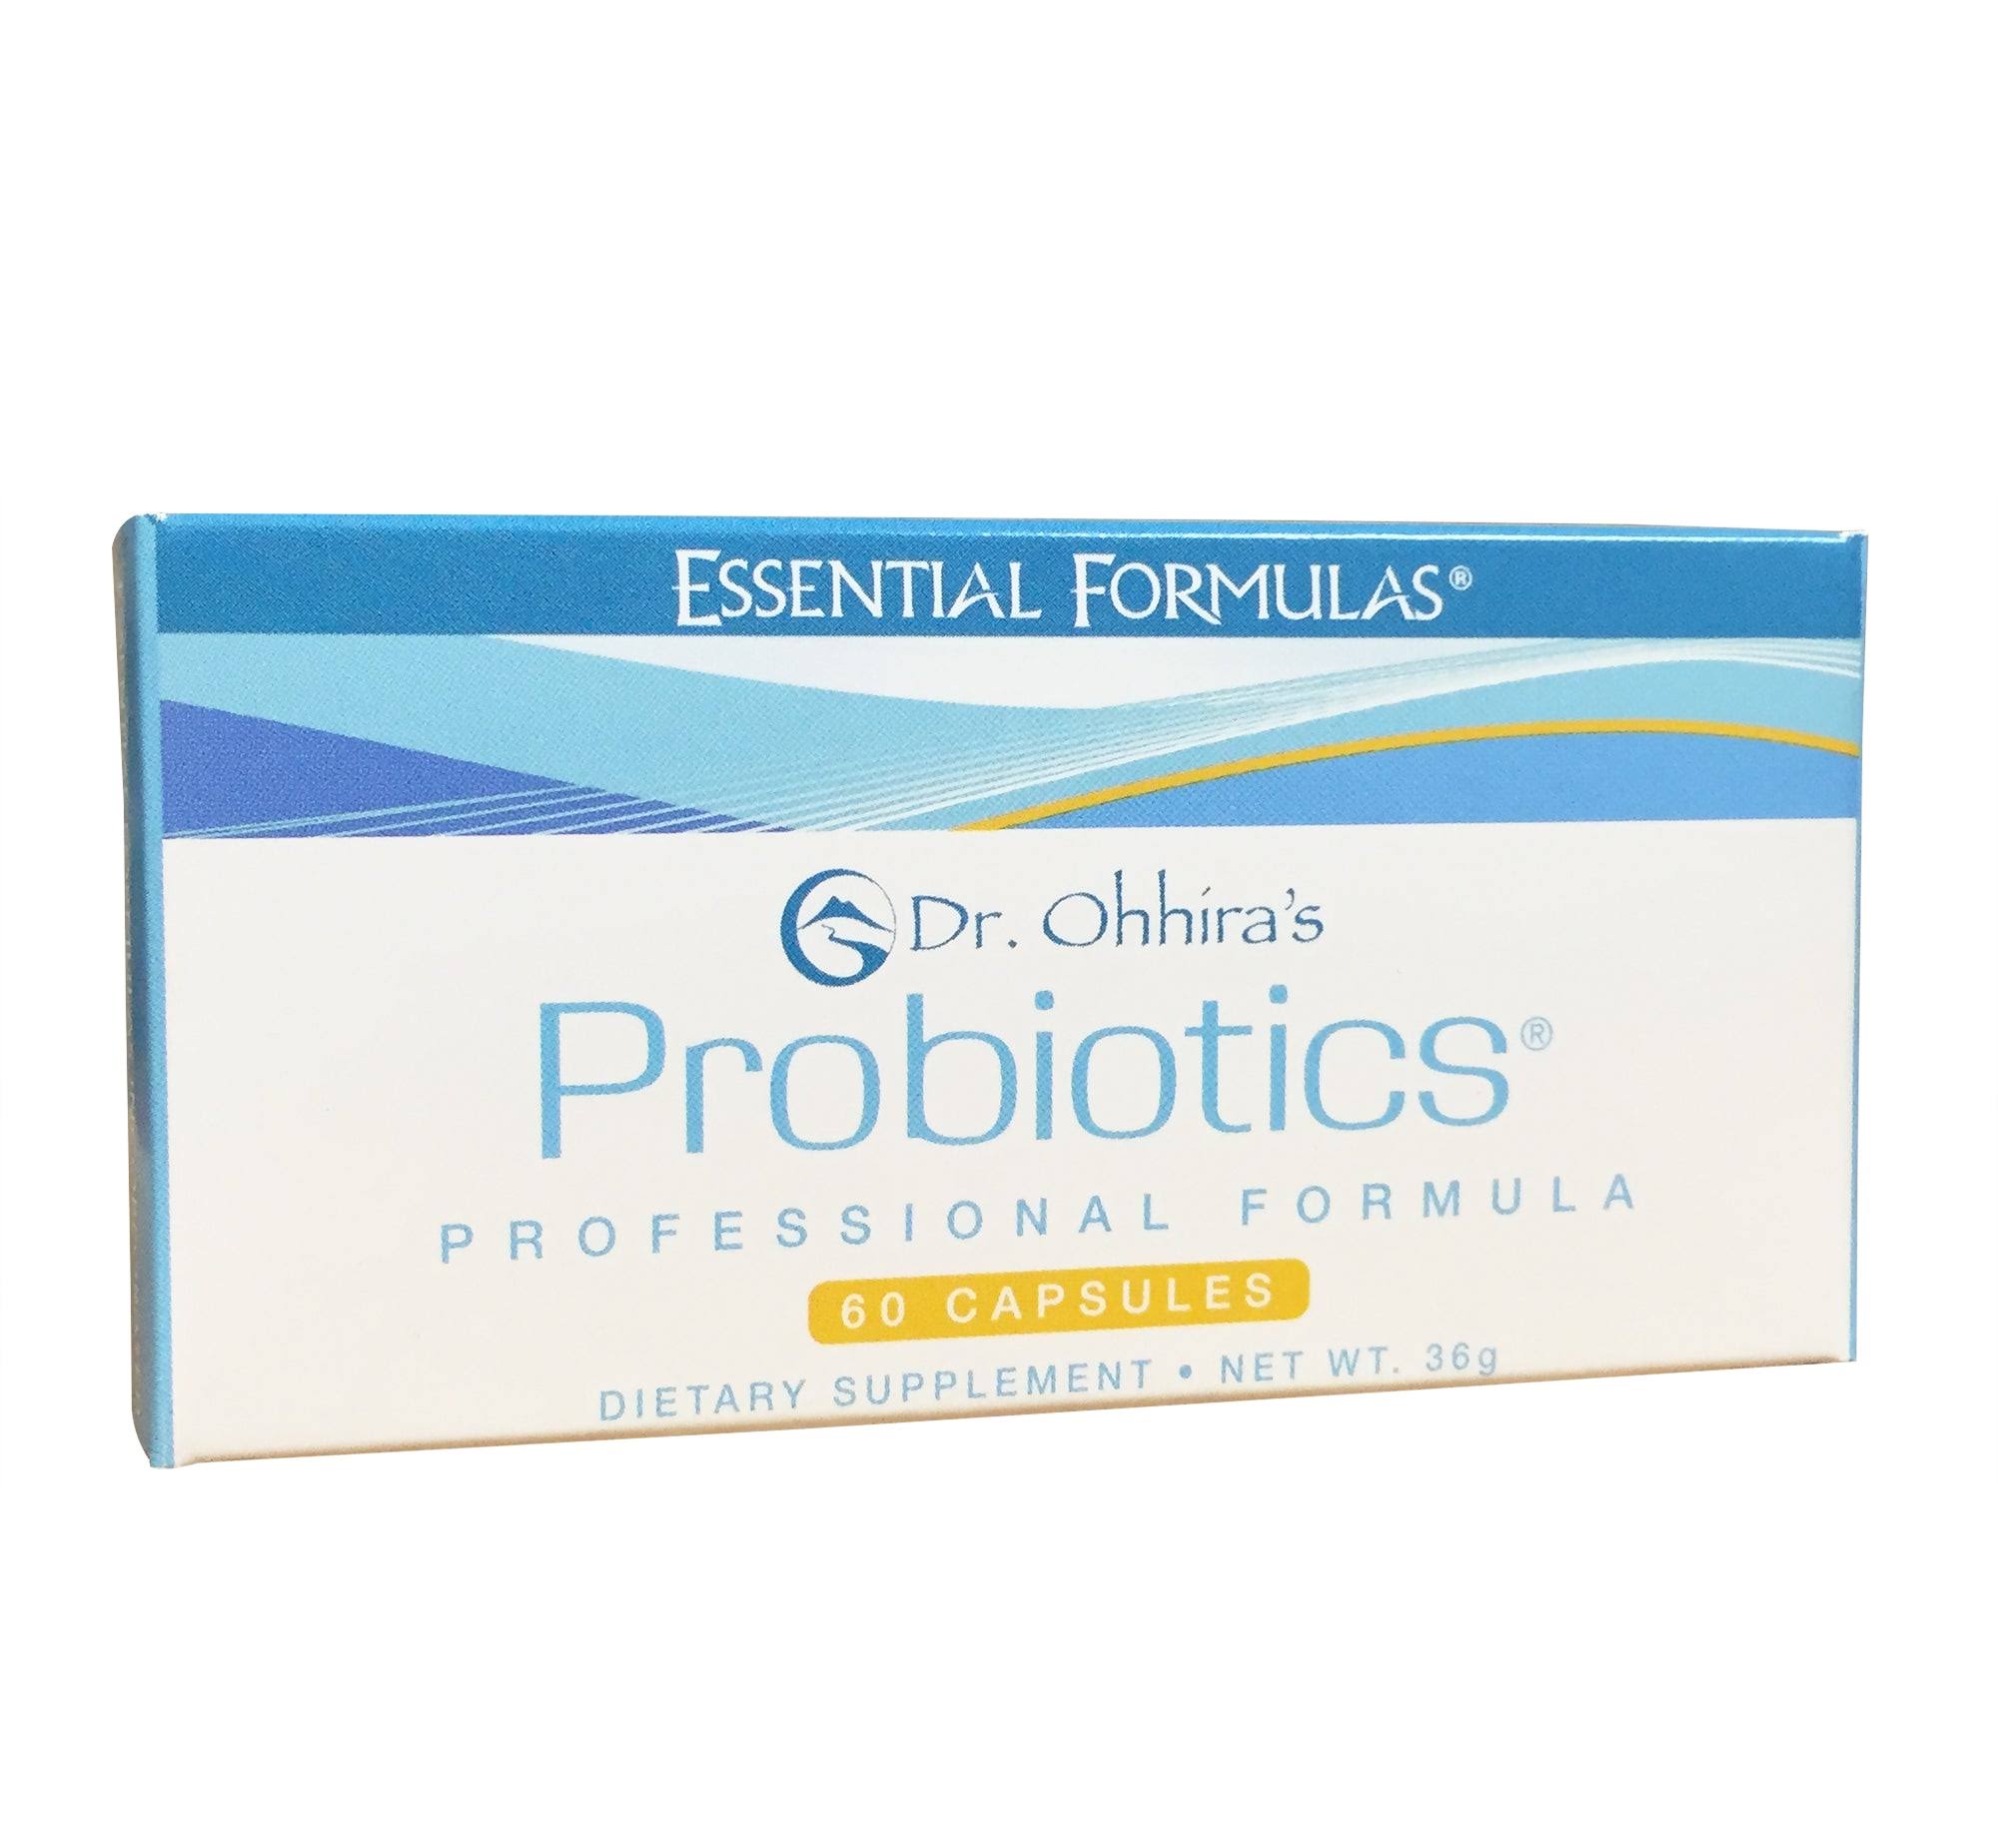 Dr. Ohhira's Probiotics Professional Formula - 60 Capsules, 36g